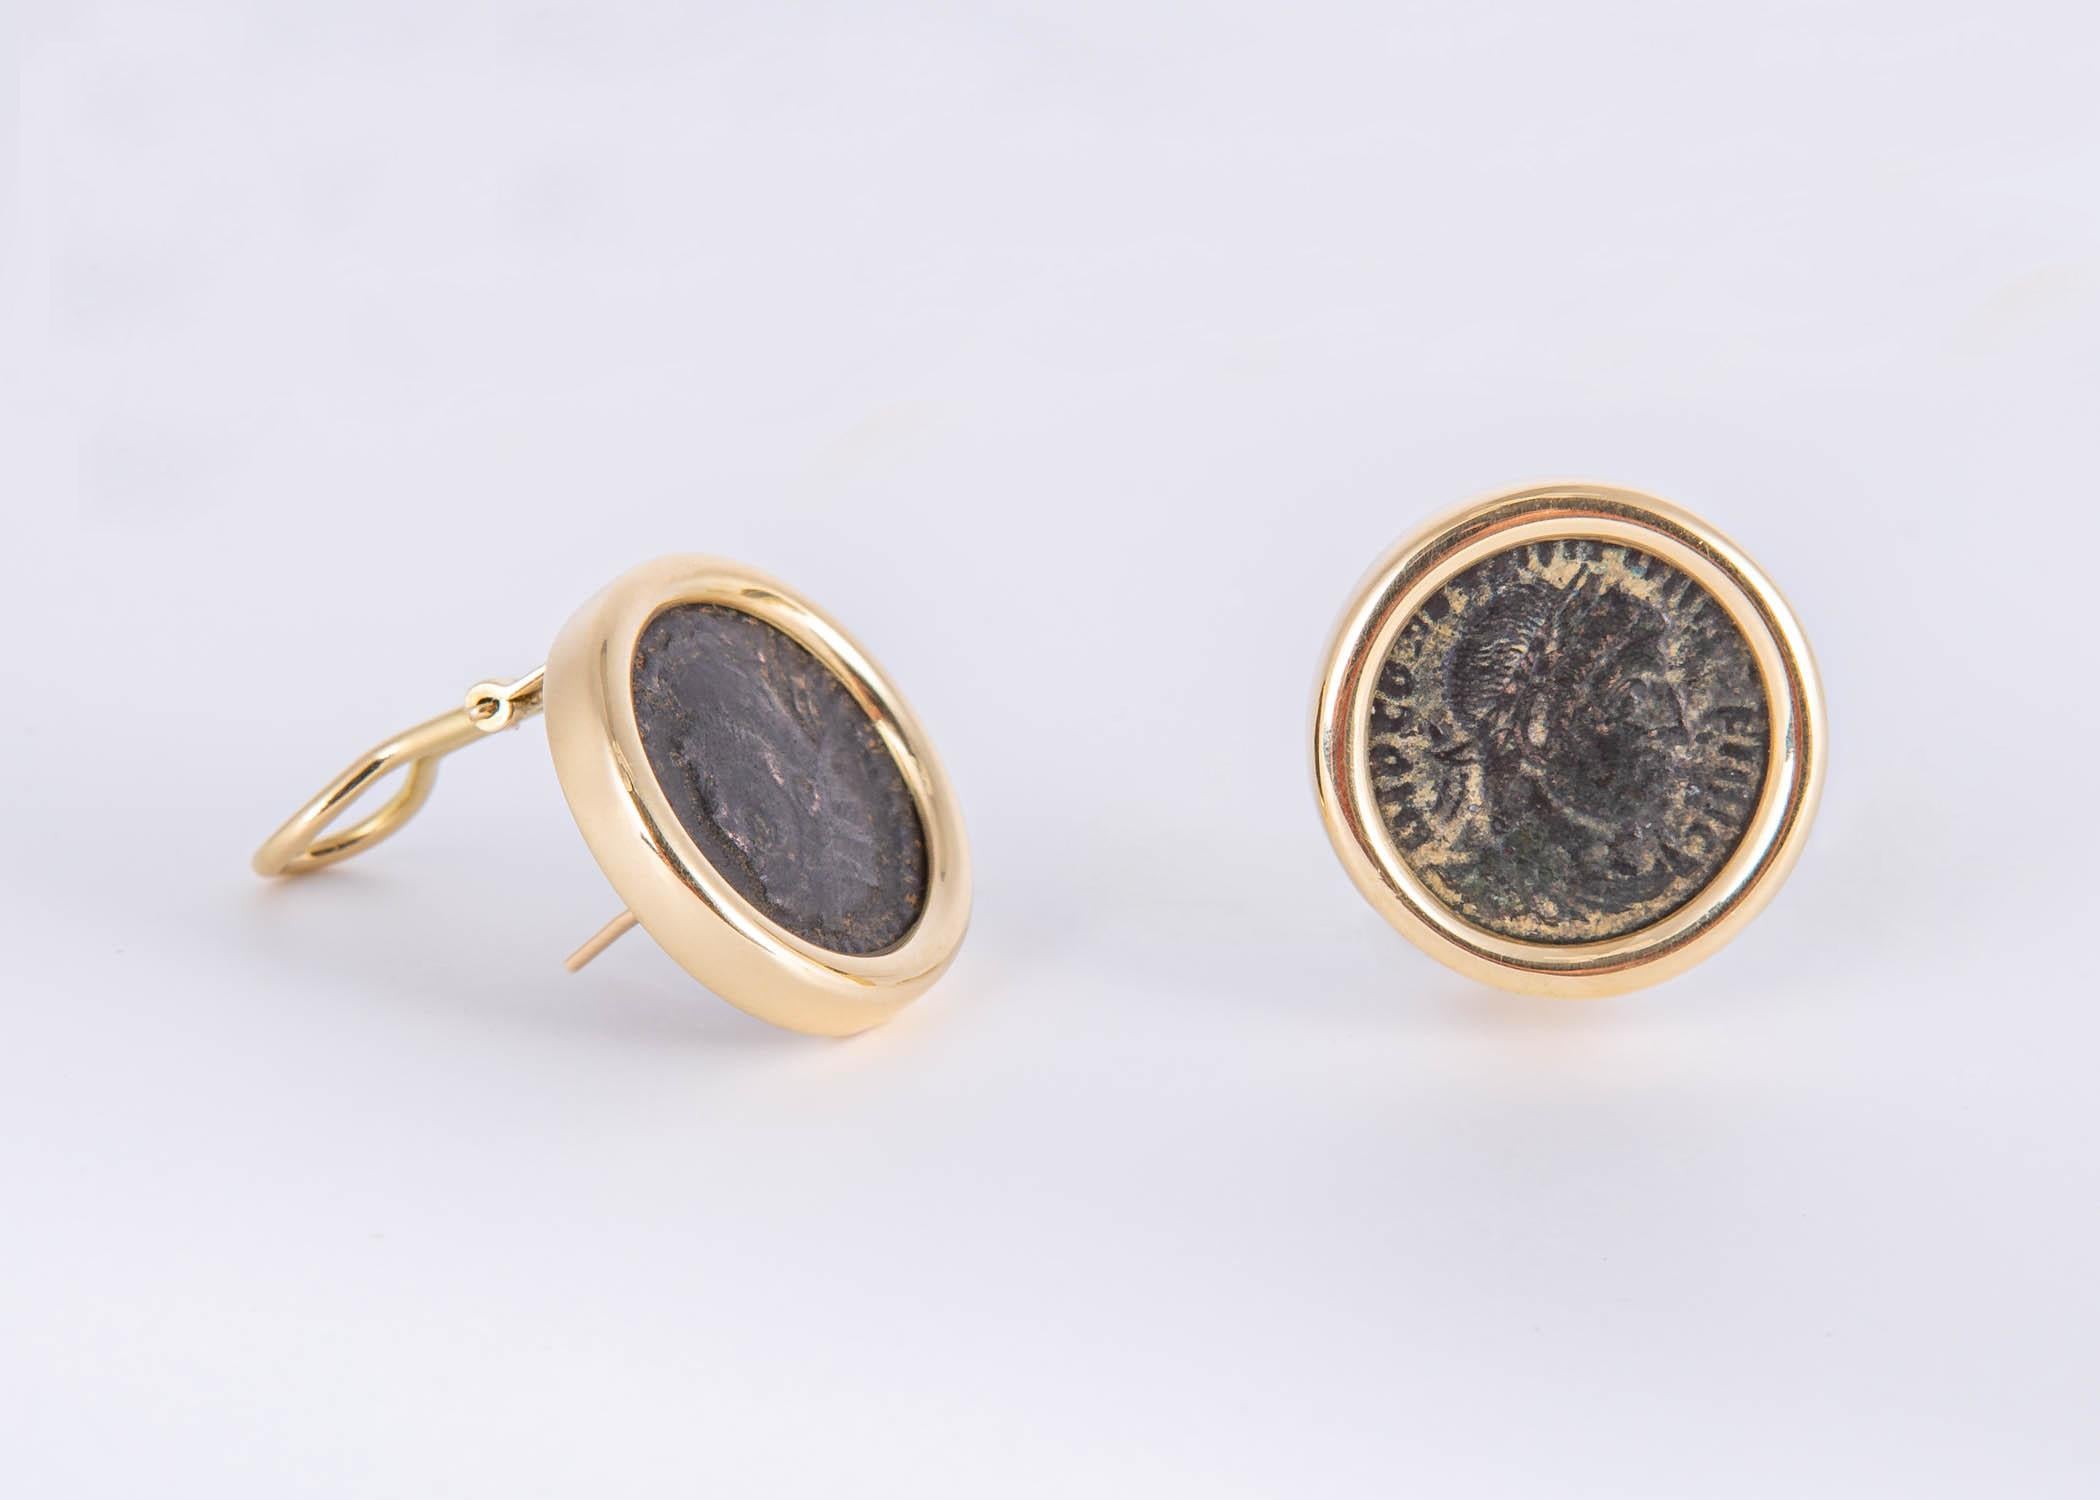 Ein Stil, den der berühmte italienische Juwelier Bvlgari populär gemacht hat. Ein Paar antiker Münzen wird von schweren 18-karätigen Lünetten umrahmt, um einen tragbaren, schicken Stil zu schaffen. 7/8-Zoll in der Größe.